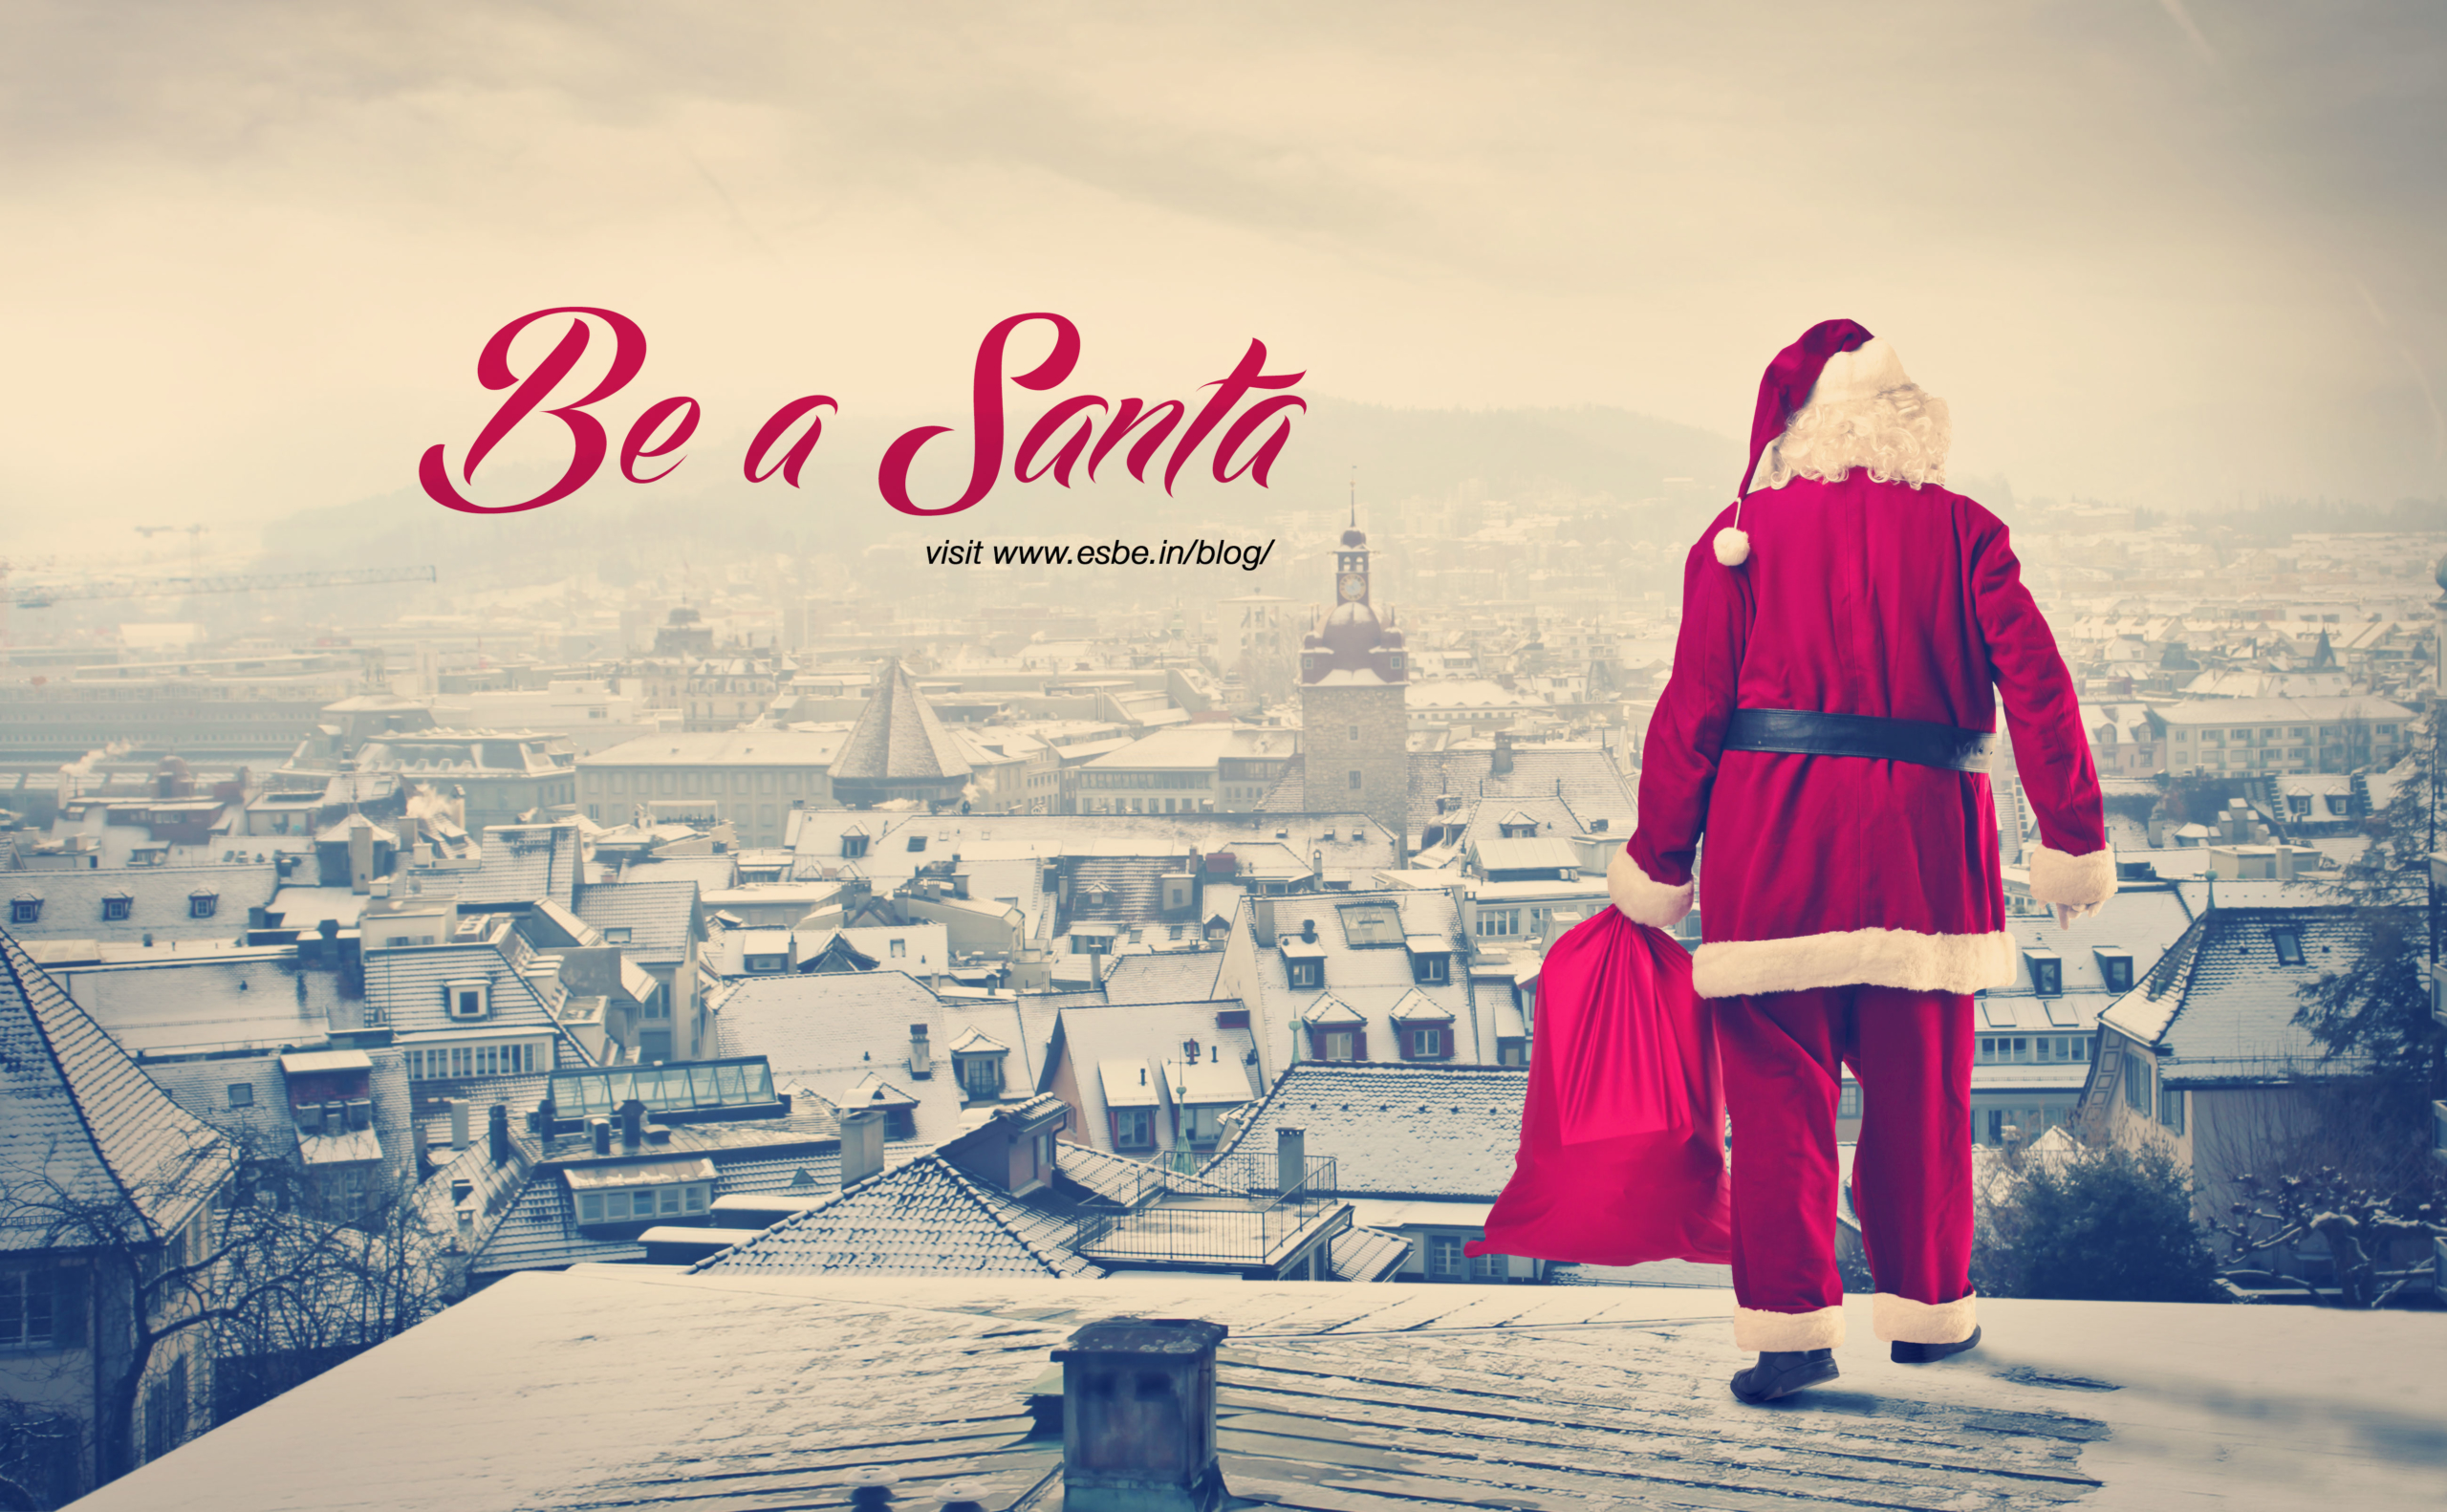 Be a Santa